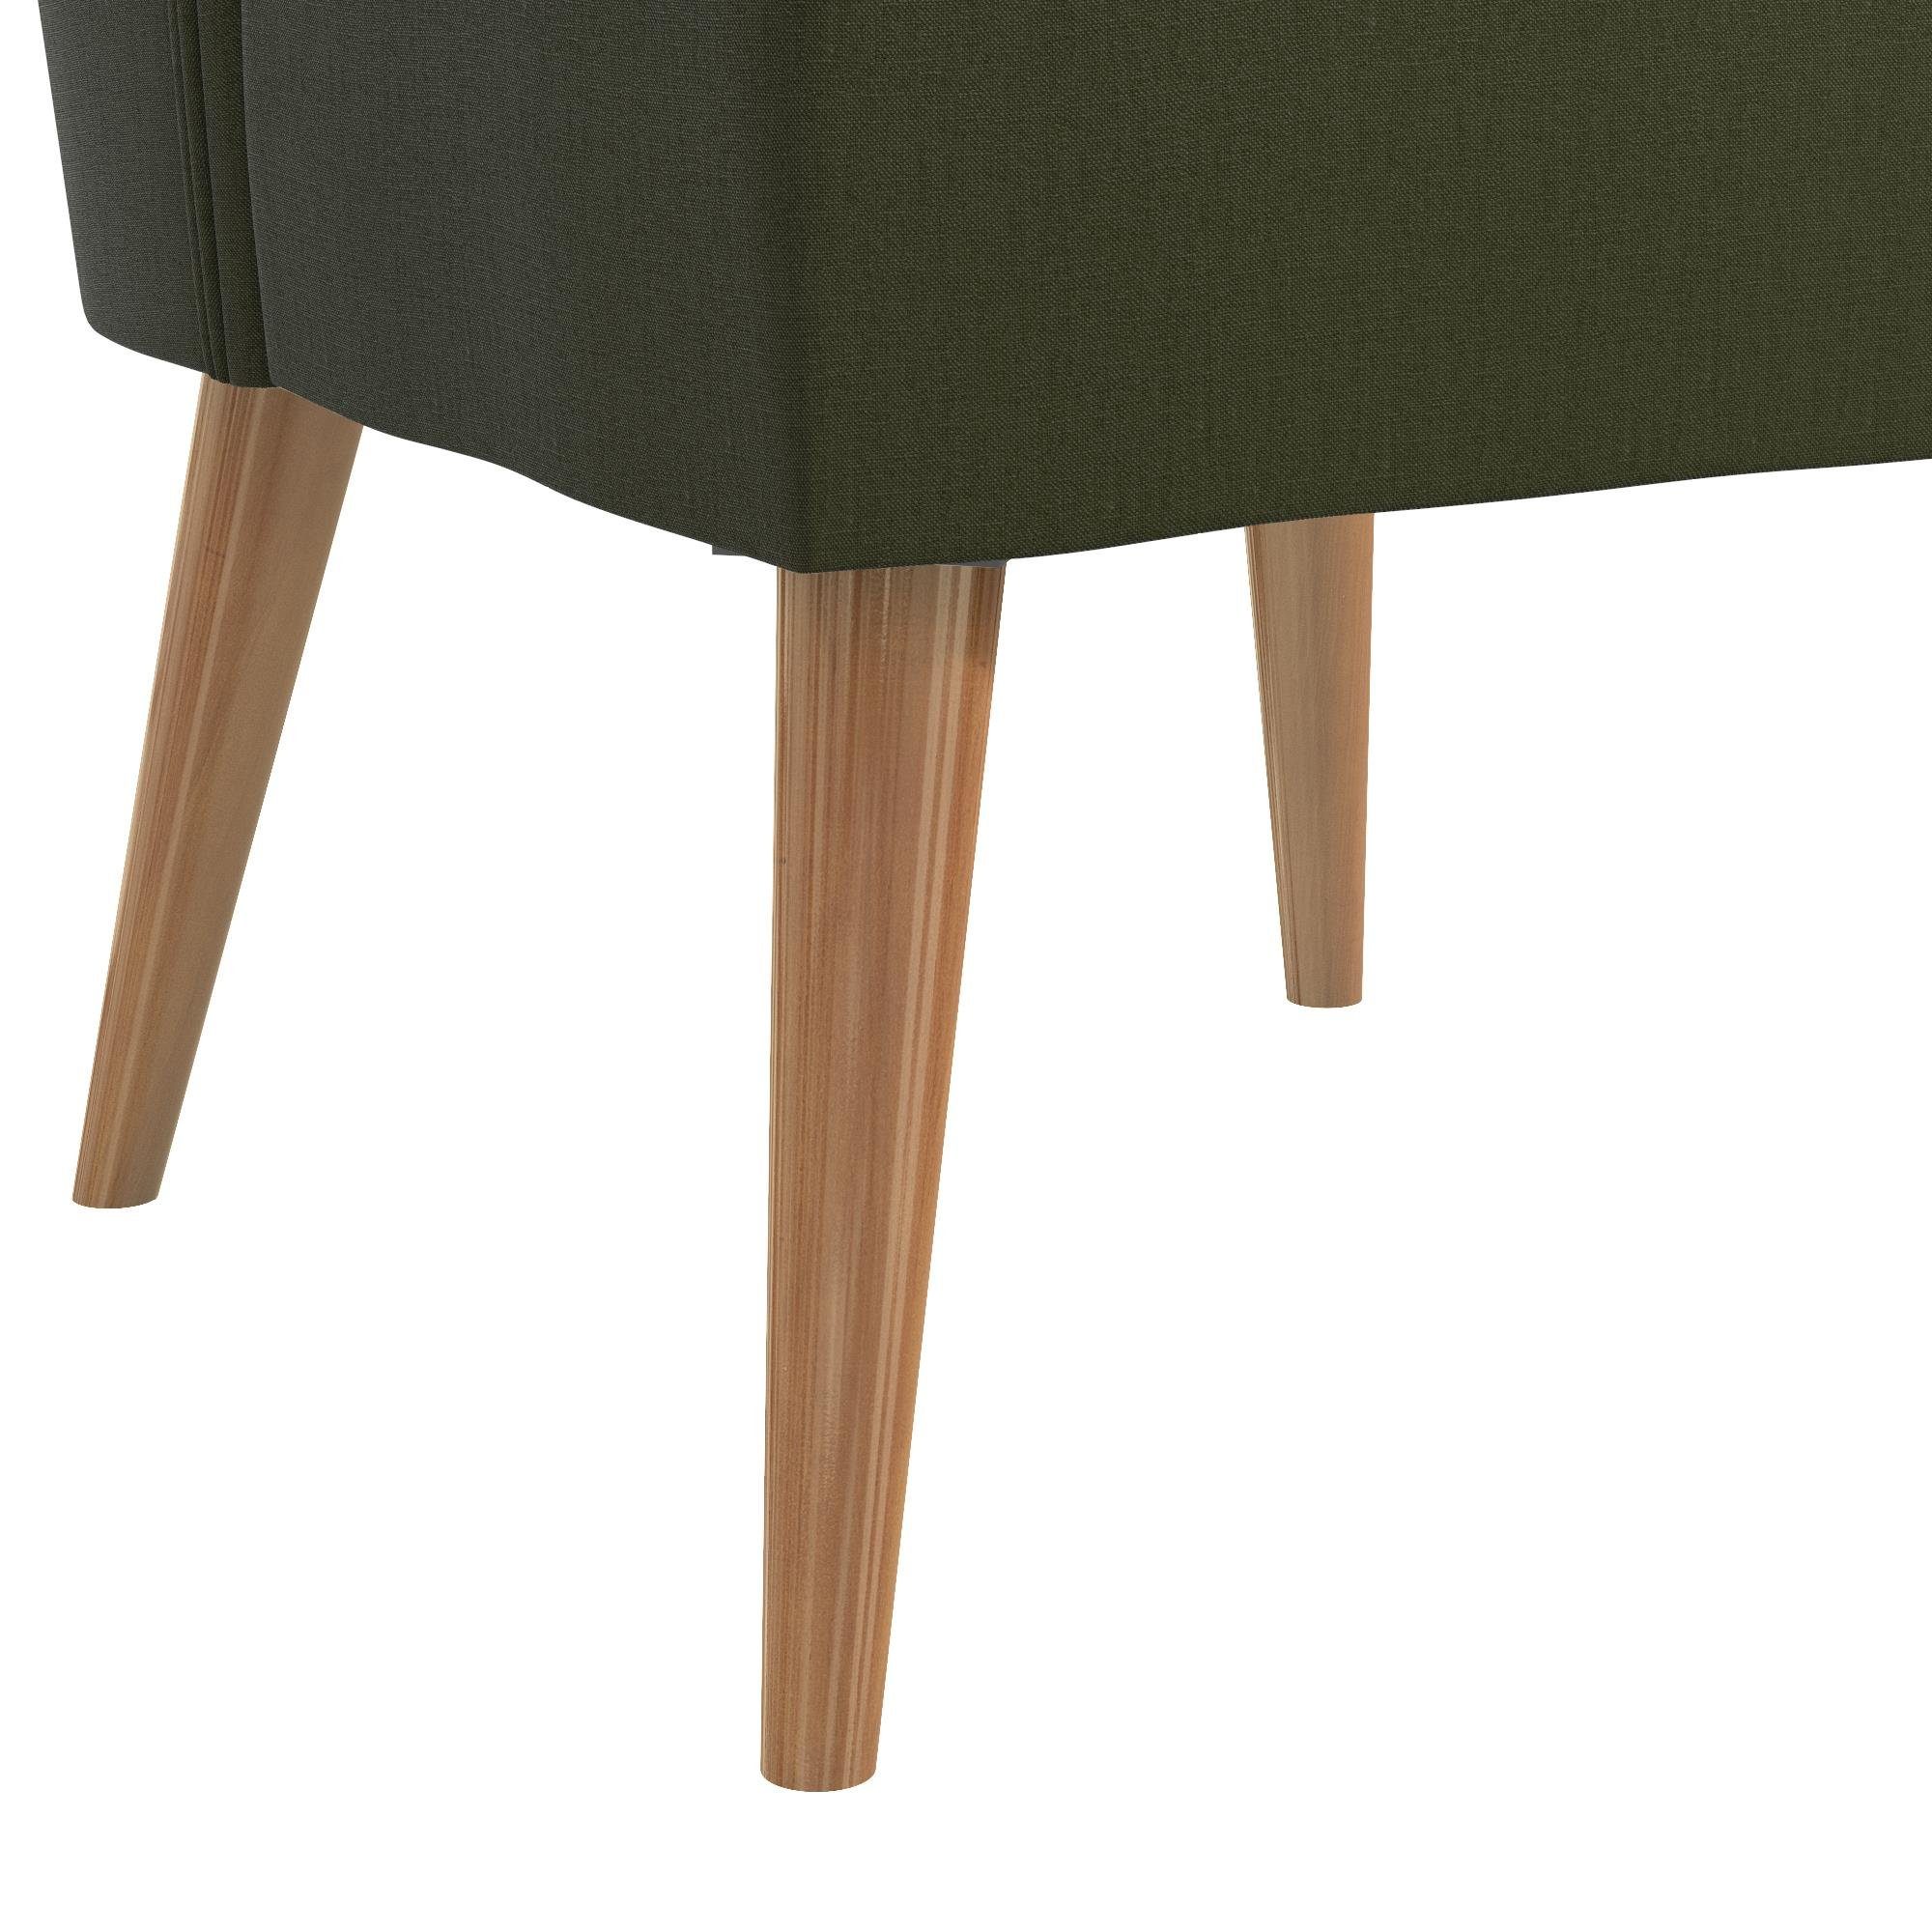 Sitzhöhe Leinenstoff, Holzbeine, (1 48 loft24 Brittany Polsterstuhl Bezug cm aus grün St),